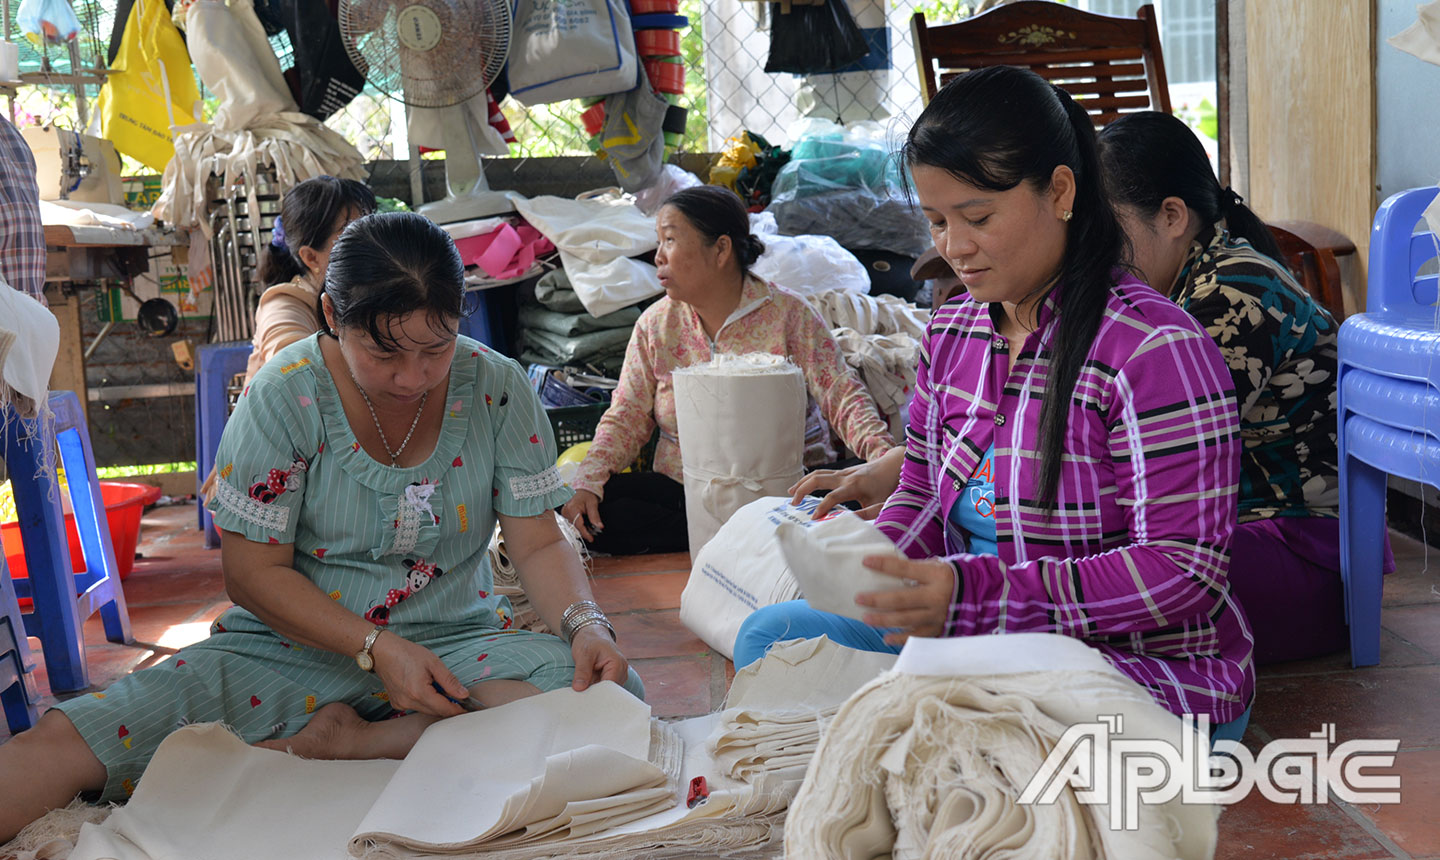 Cơ sở may túi xách của chị Bạc góp phần giải quyết việc làm cho nhiều chị em phụ nữ.